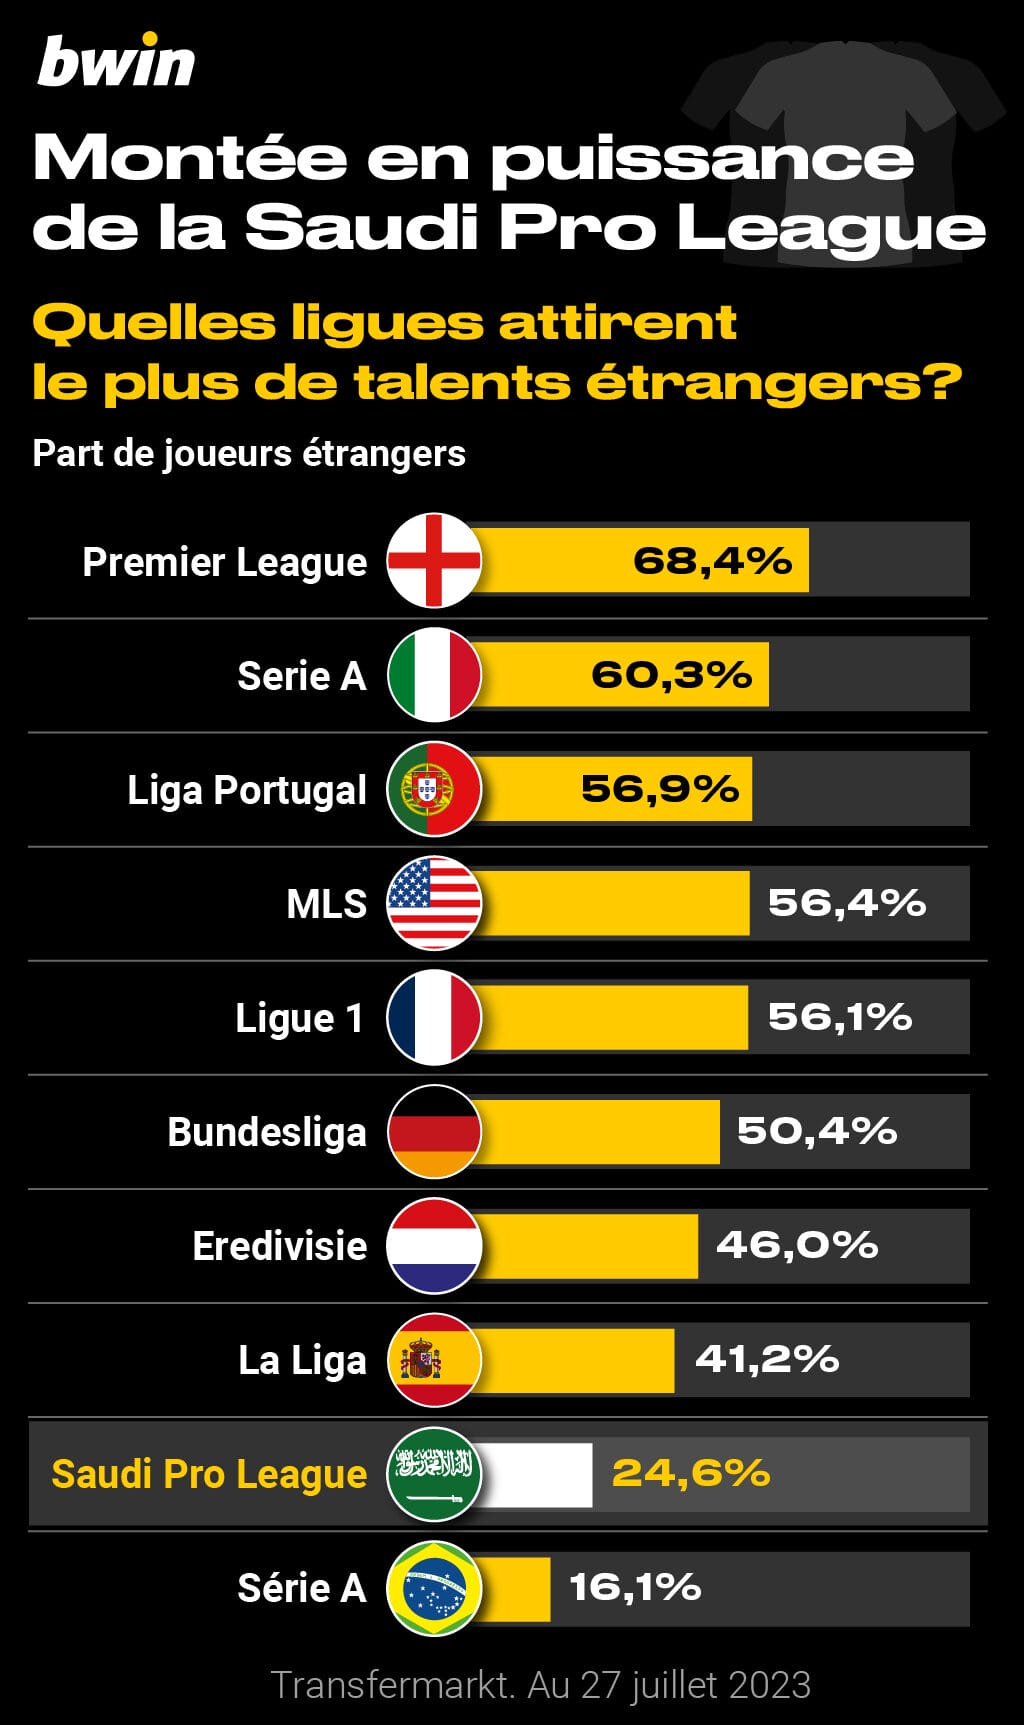 Quelles ligues attirent le plus de talents étrangers